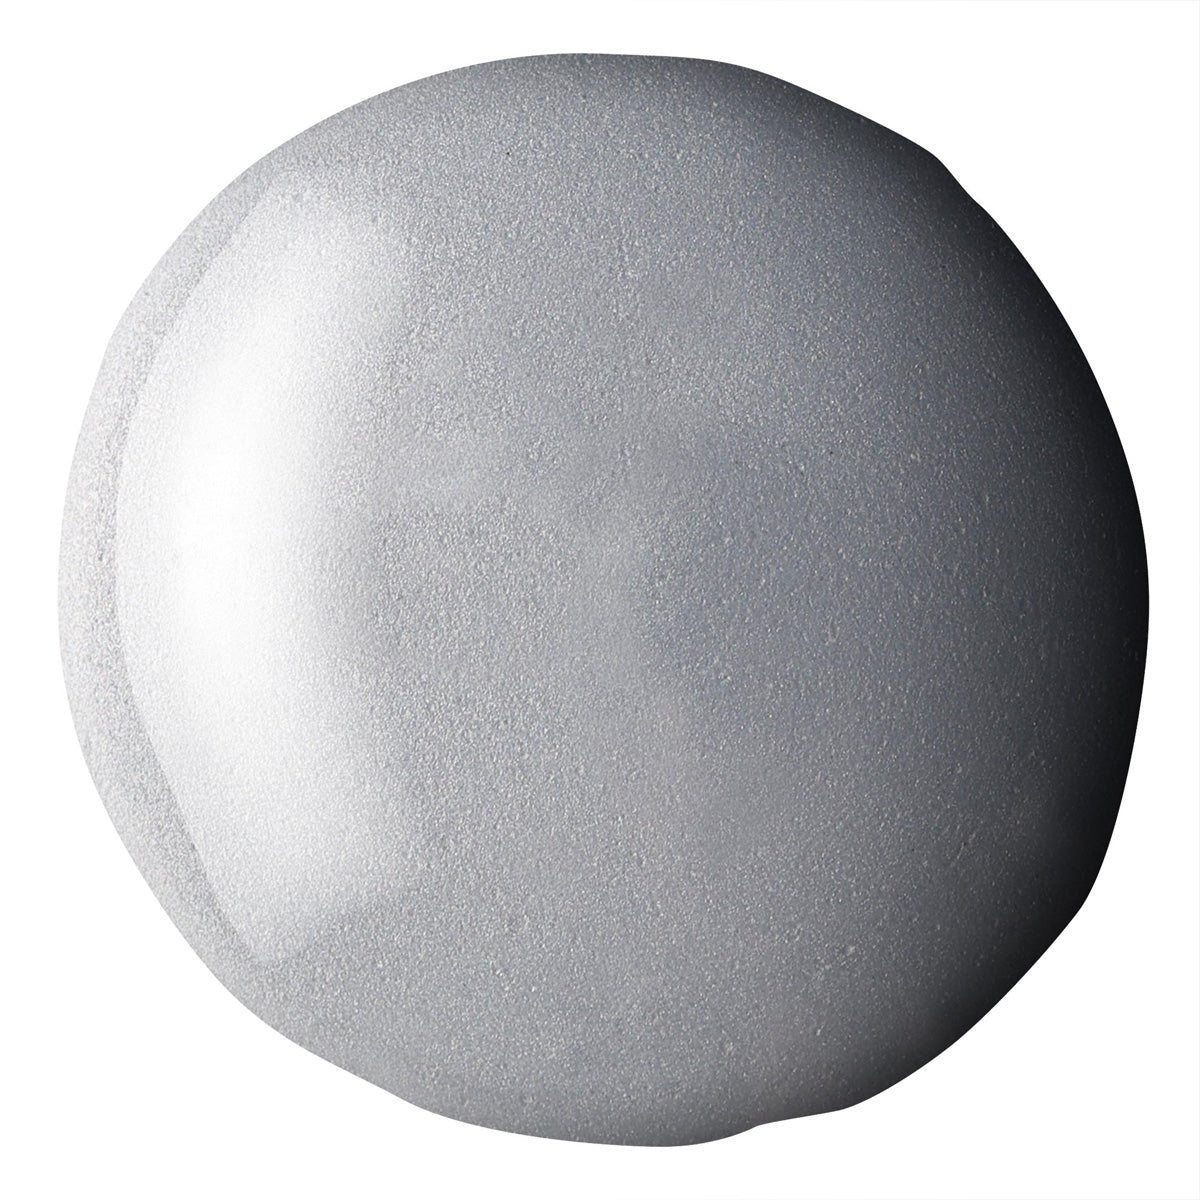 Liquitex Basics Fluid Acrylic 118ml - Silver S2